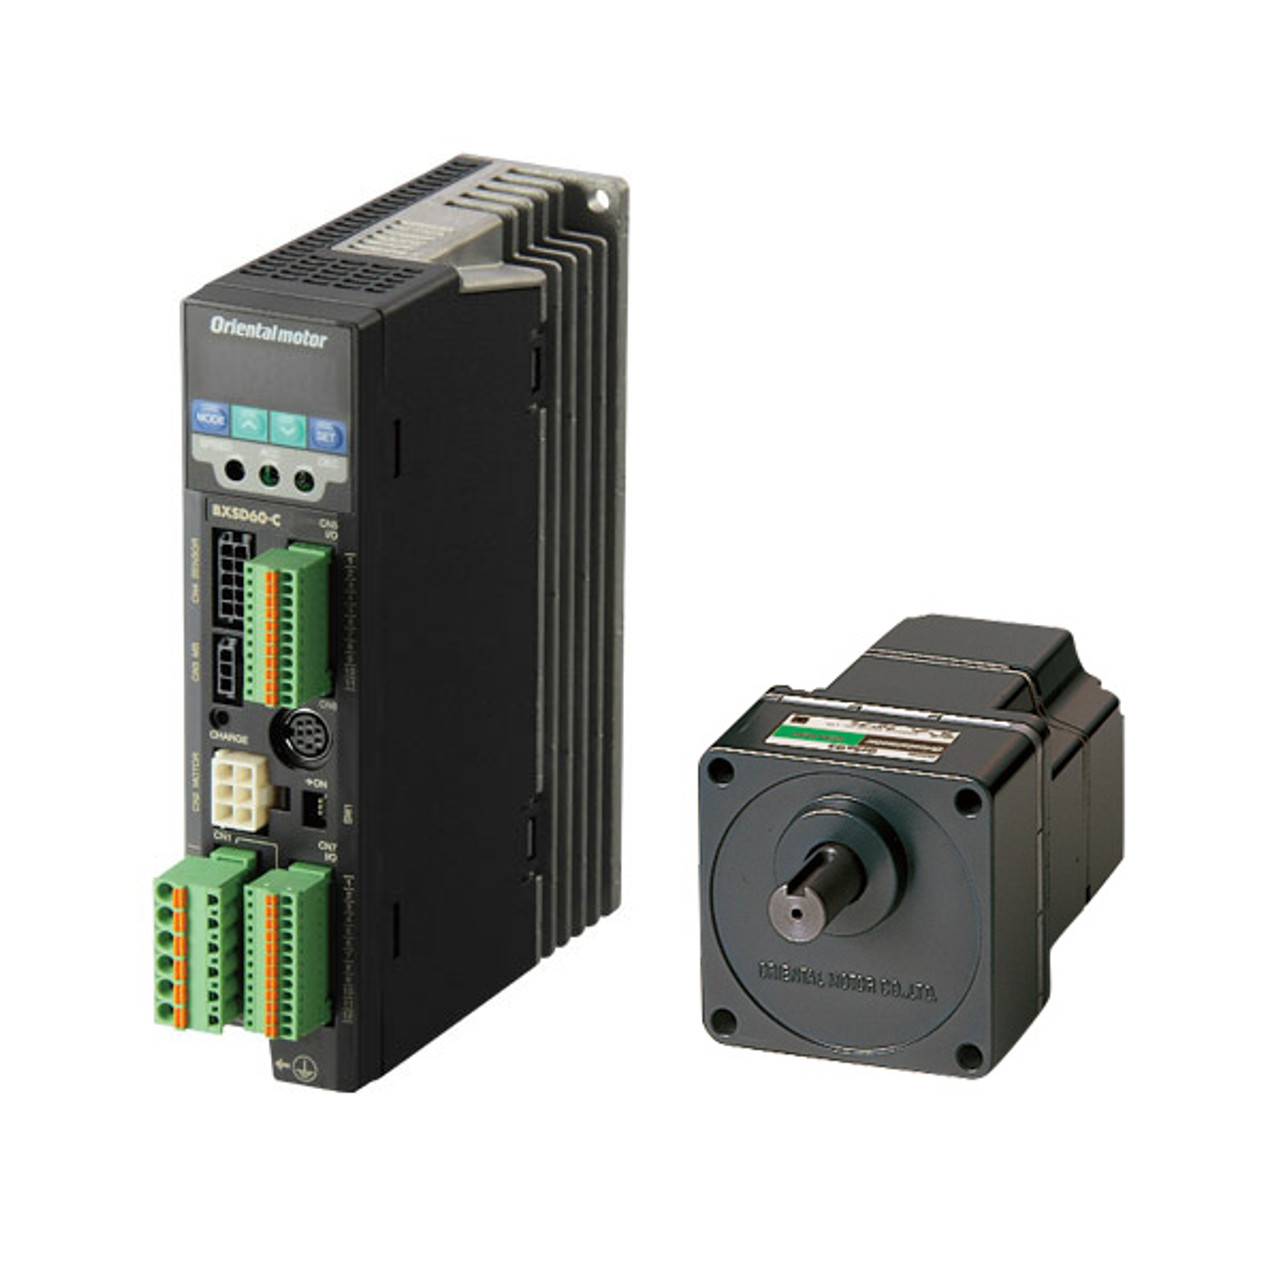 BXM230M-30 / BXSD30-C2 - Product Image